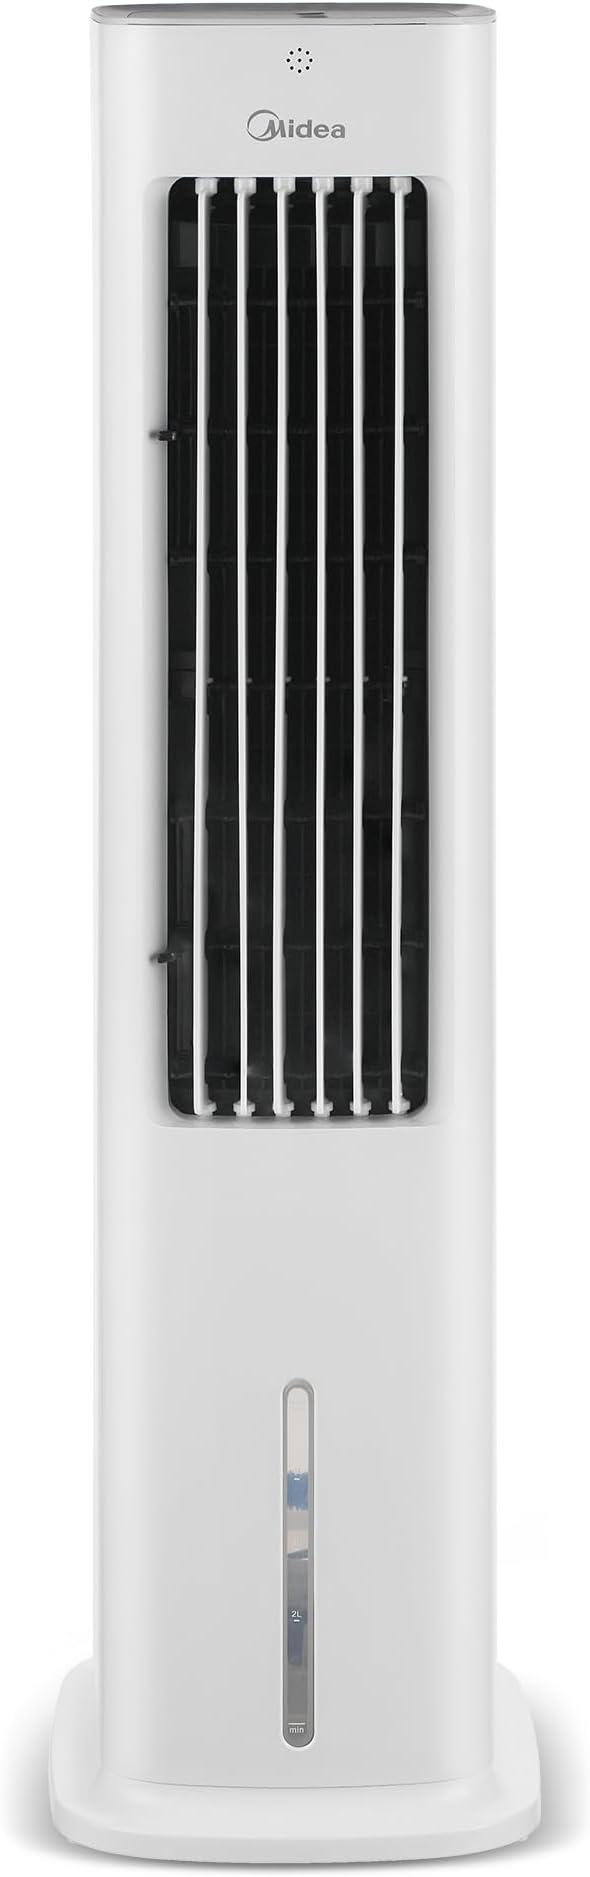 climatizador-de-ar-digital-midea-127v-60hz - Imagem